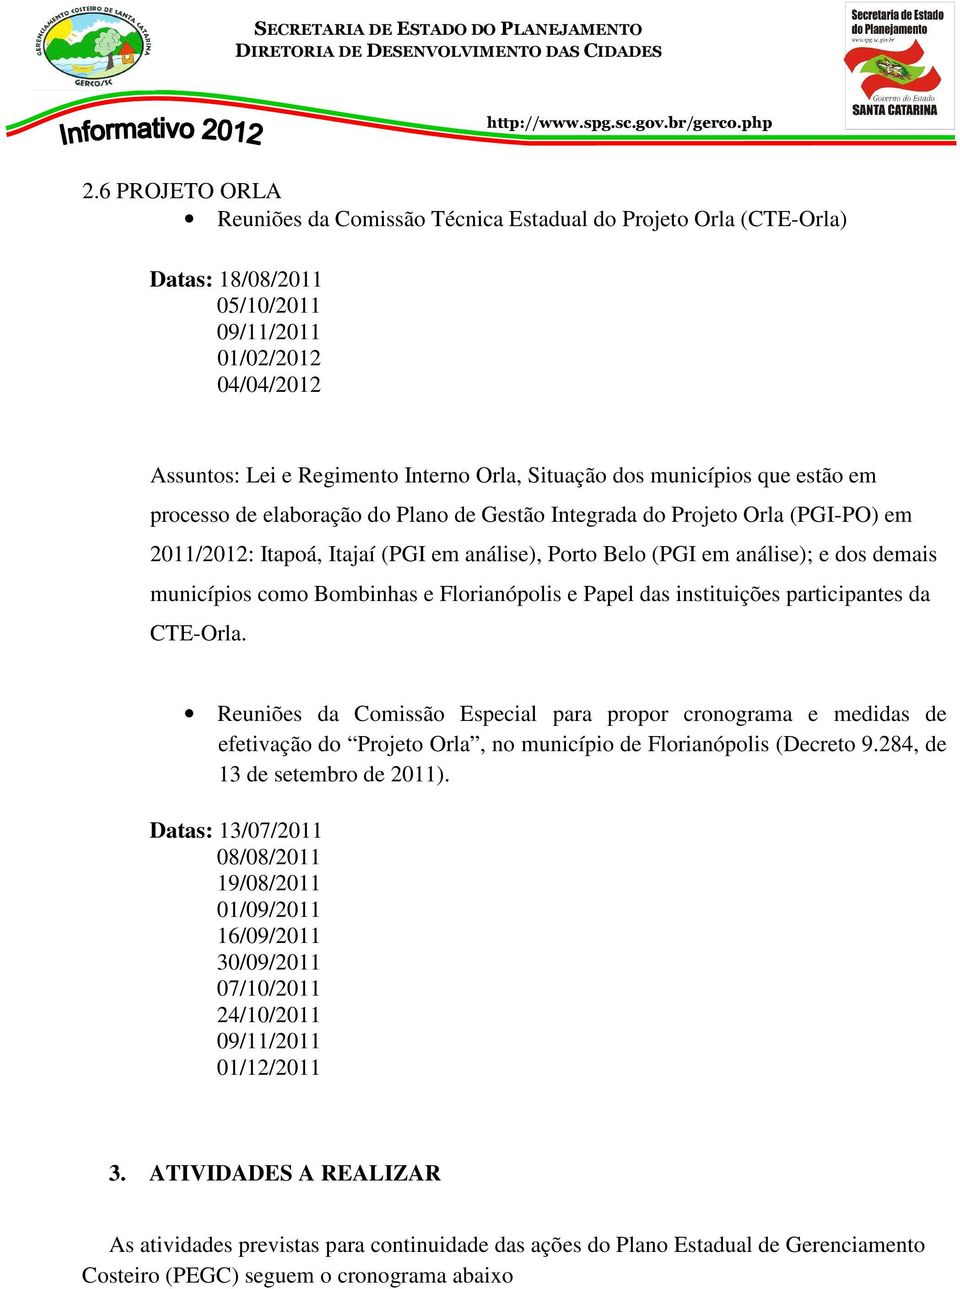 municípios como Bombinhas e Florianópolis e Papel das instituições participantes da CTE-Orla.